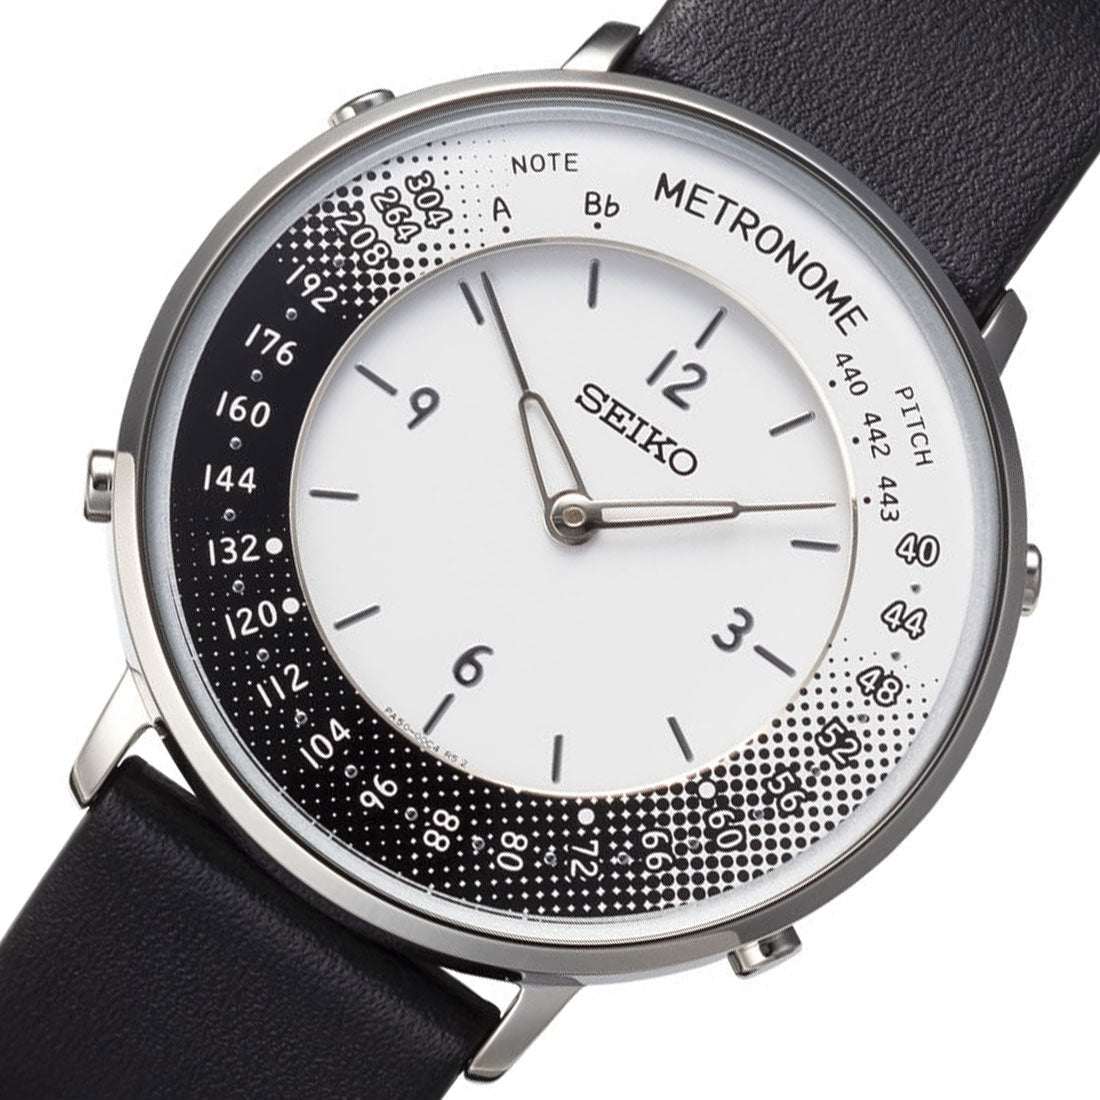 Seiko Metronome Black Leather SMW001B White Dial Casual Watch -Seiko